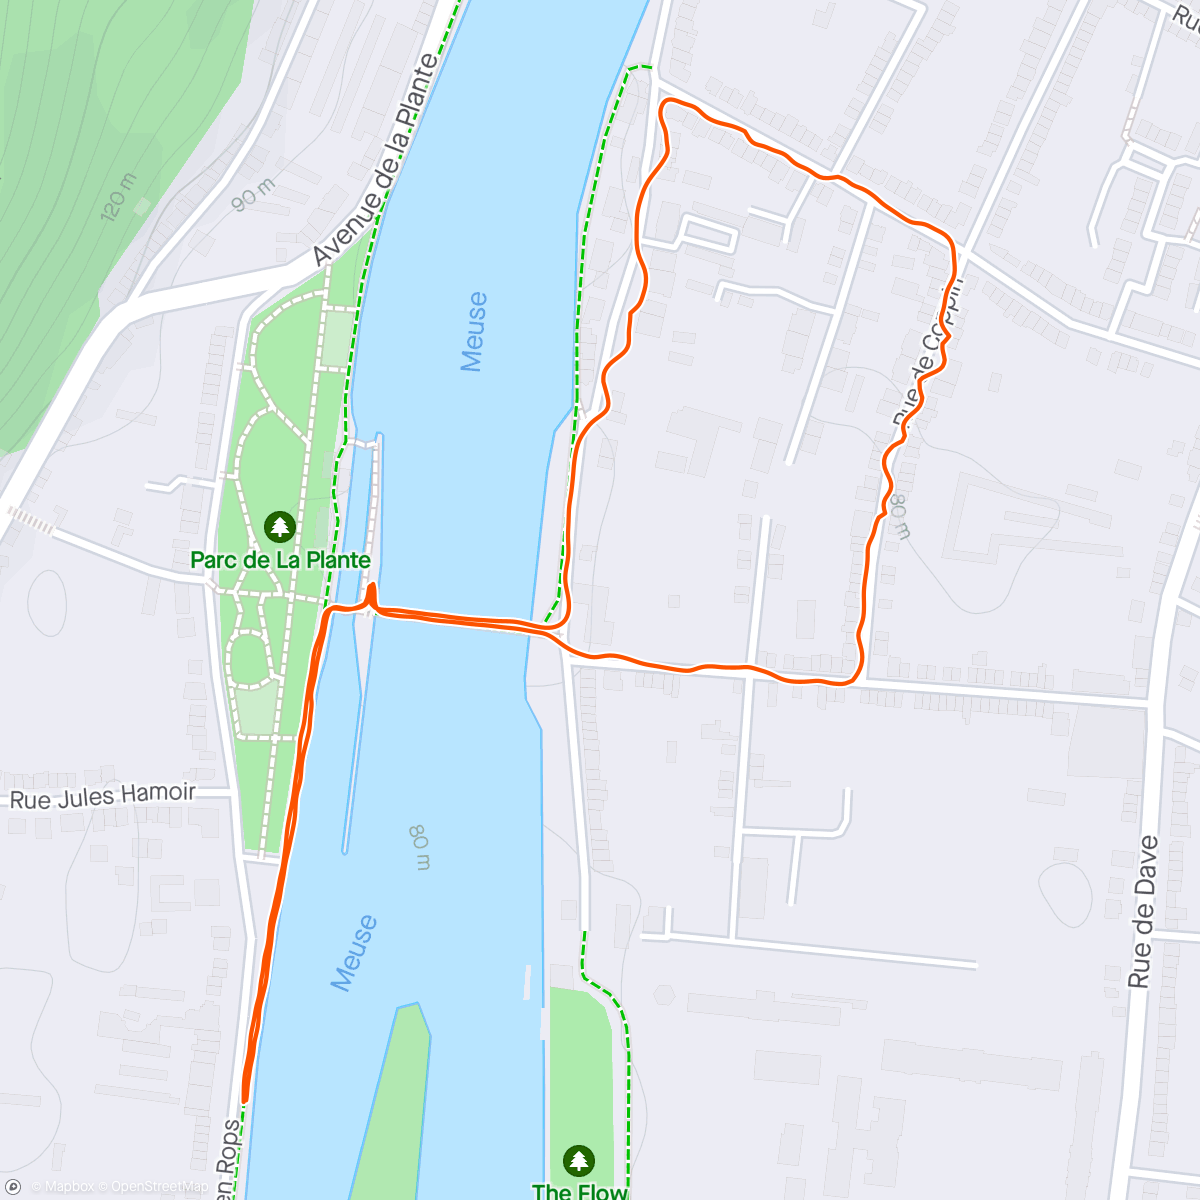 「Course à pied le soir」活動的地圖